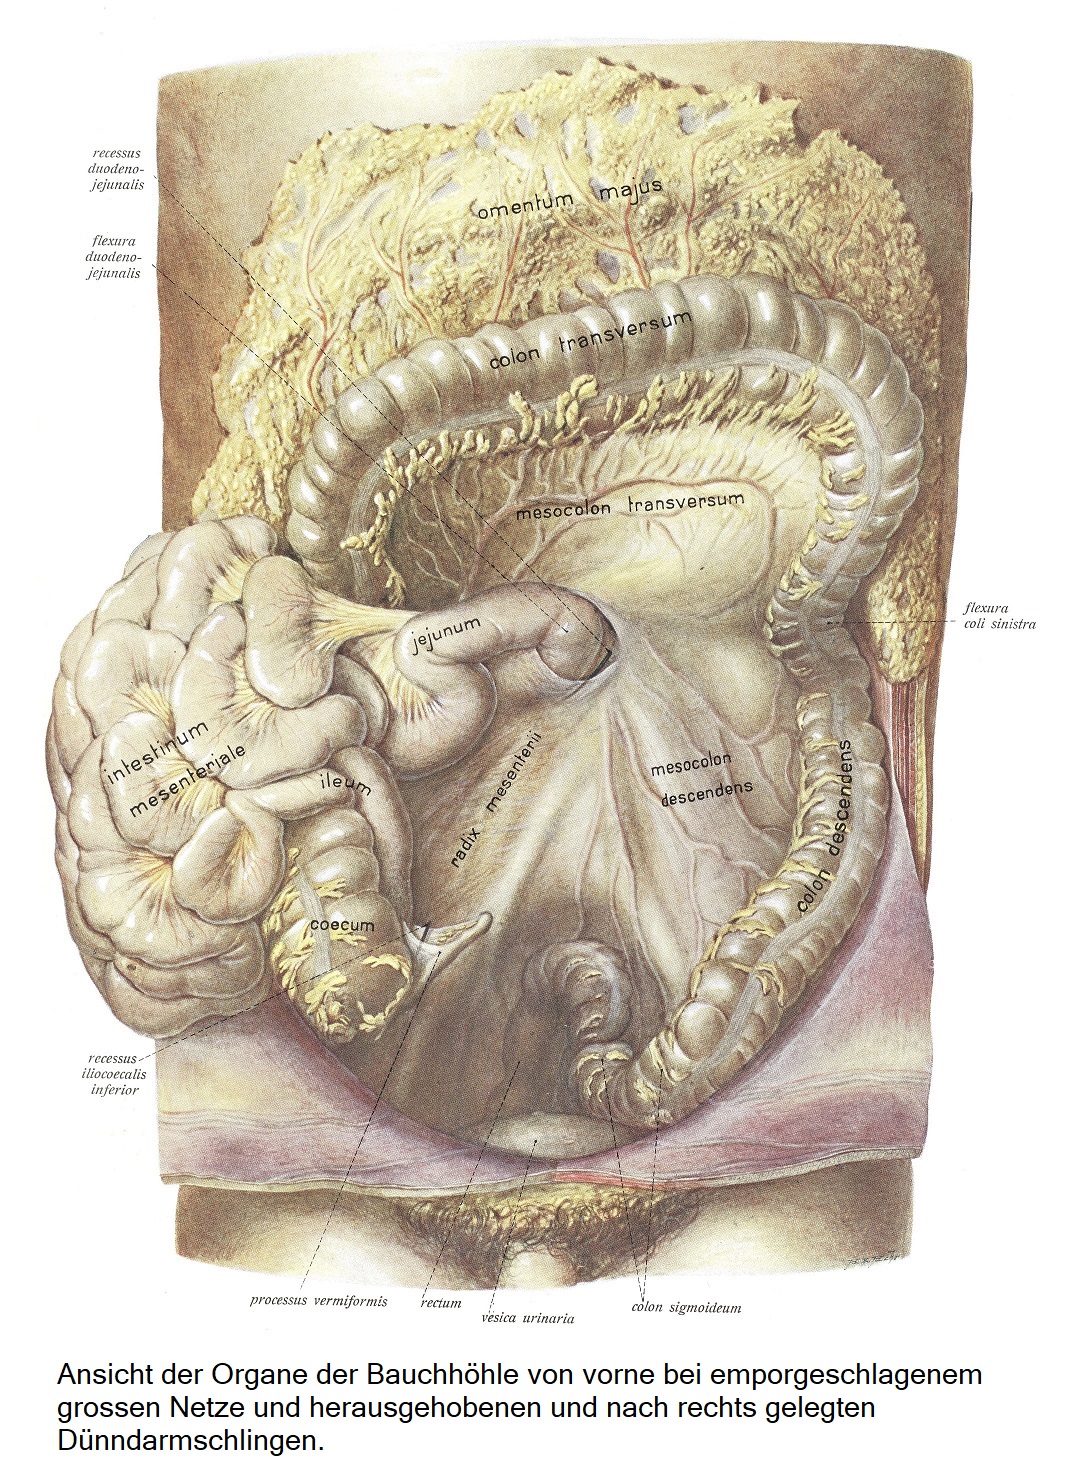 Вид спереди на органы брюшной полости с приподнятой крупной сеткой и отведенными вправо петлями тонкой кишки.